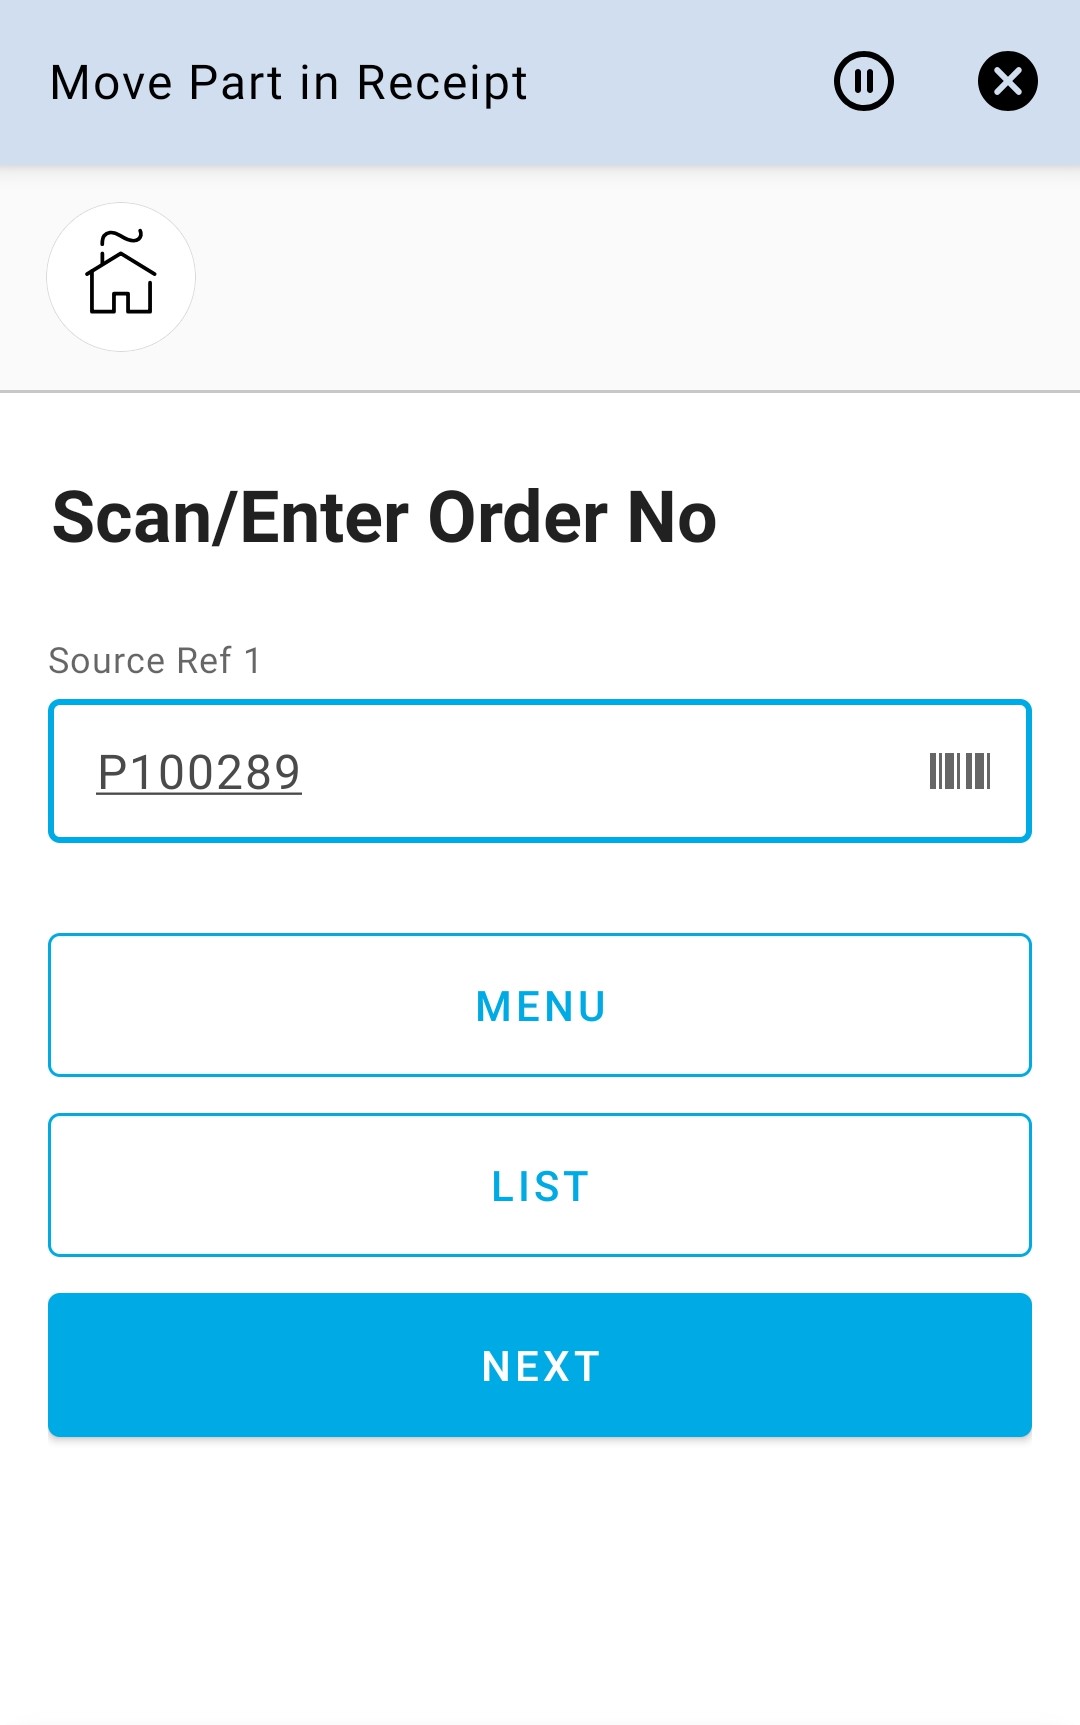 Enter Order 1